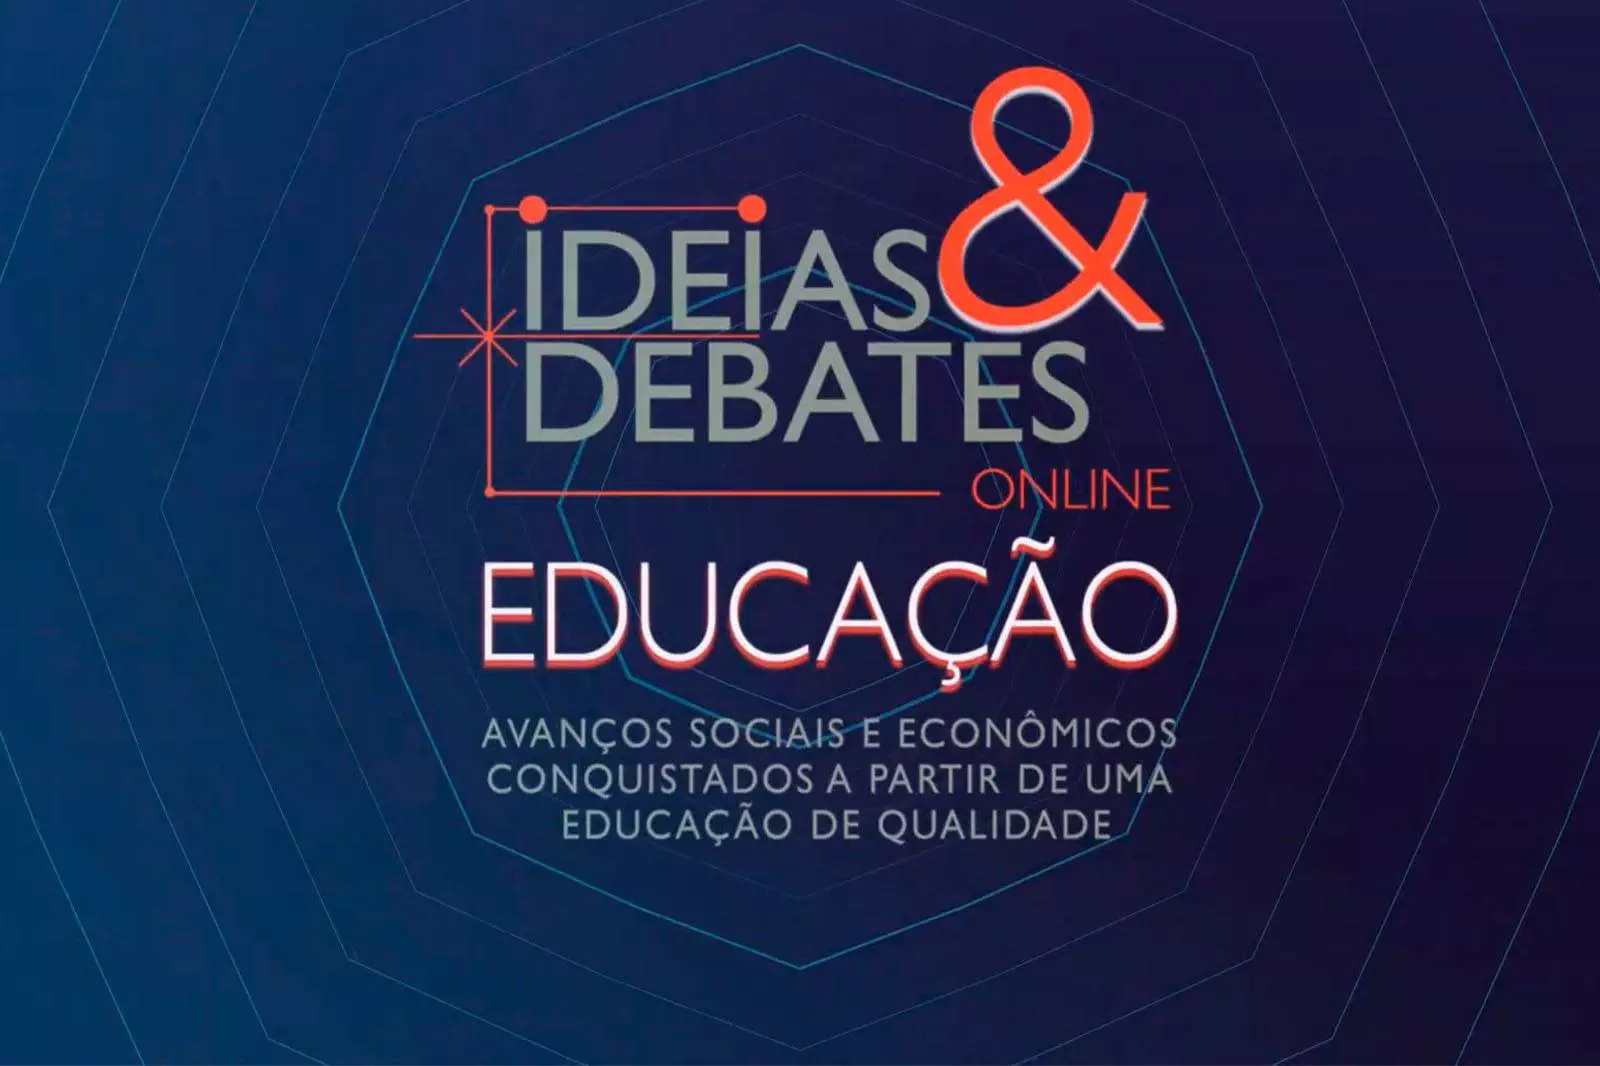 Imagem do Ideias & Debates sobre Educação